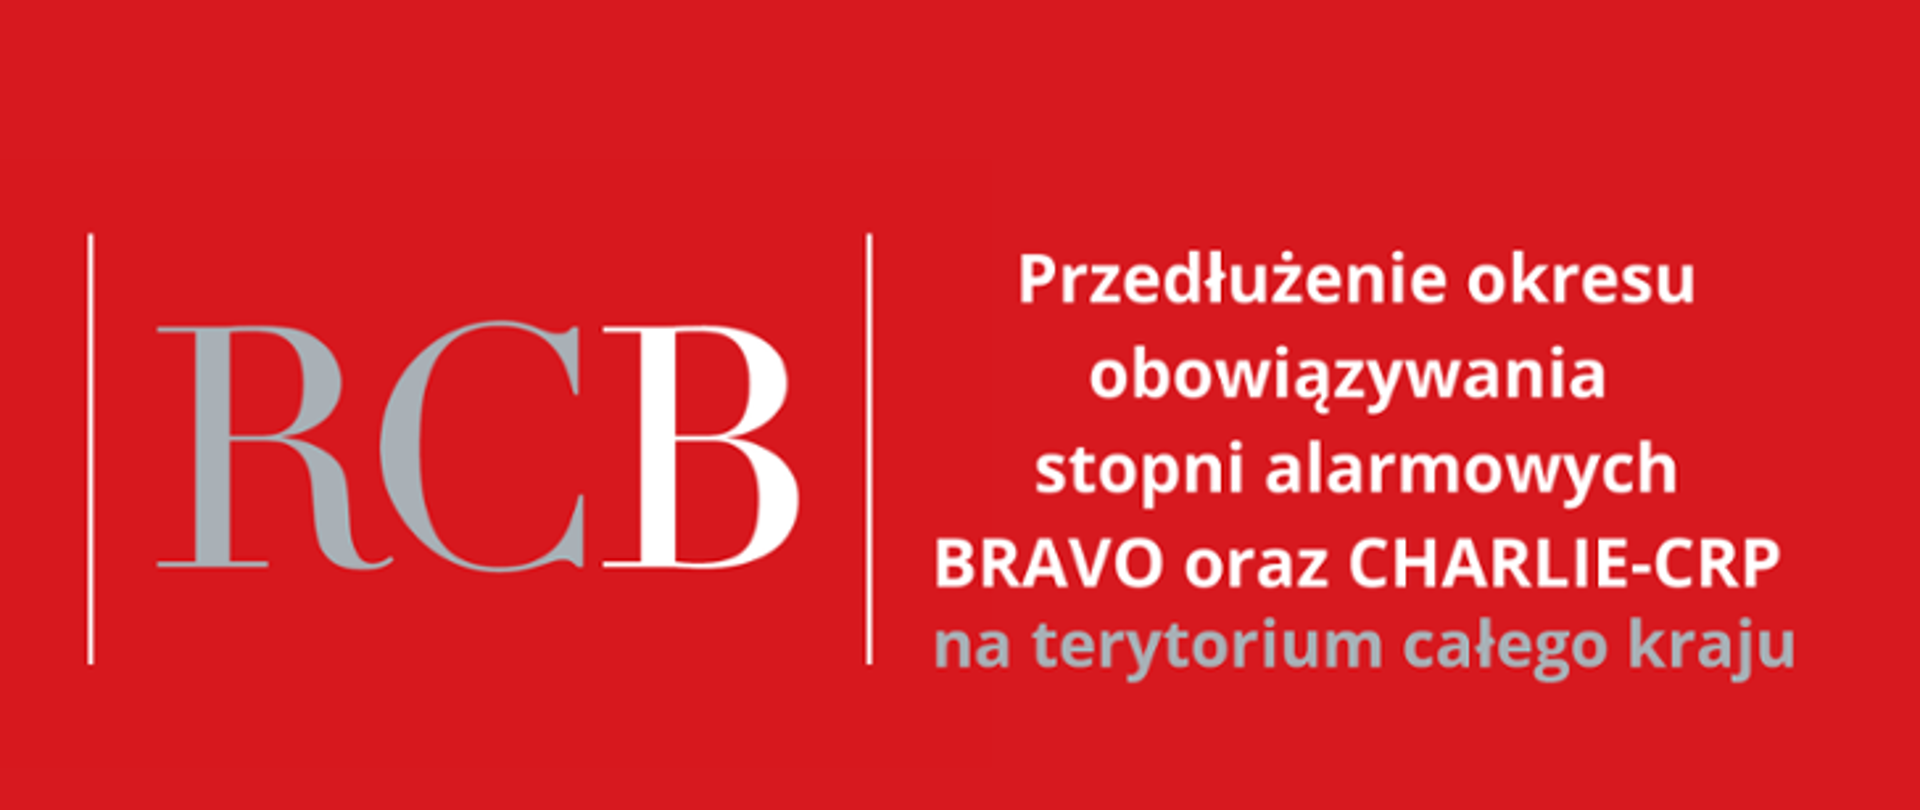 Czerwony plakat przedstawia napis: po prawej stronie: RCB, po lewej stronie: Przedłużenie okresu obowiązywania stopni alarmowych BRAVO oraz CHARLIE - CRP na terytorium całego kraju. 